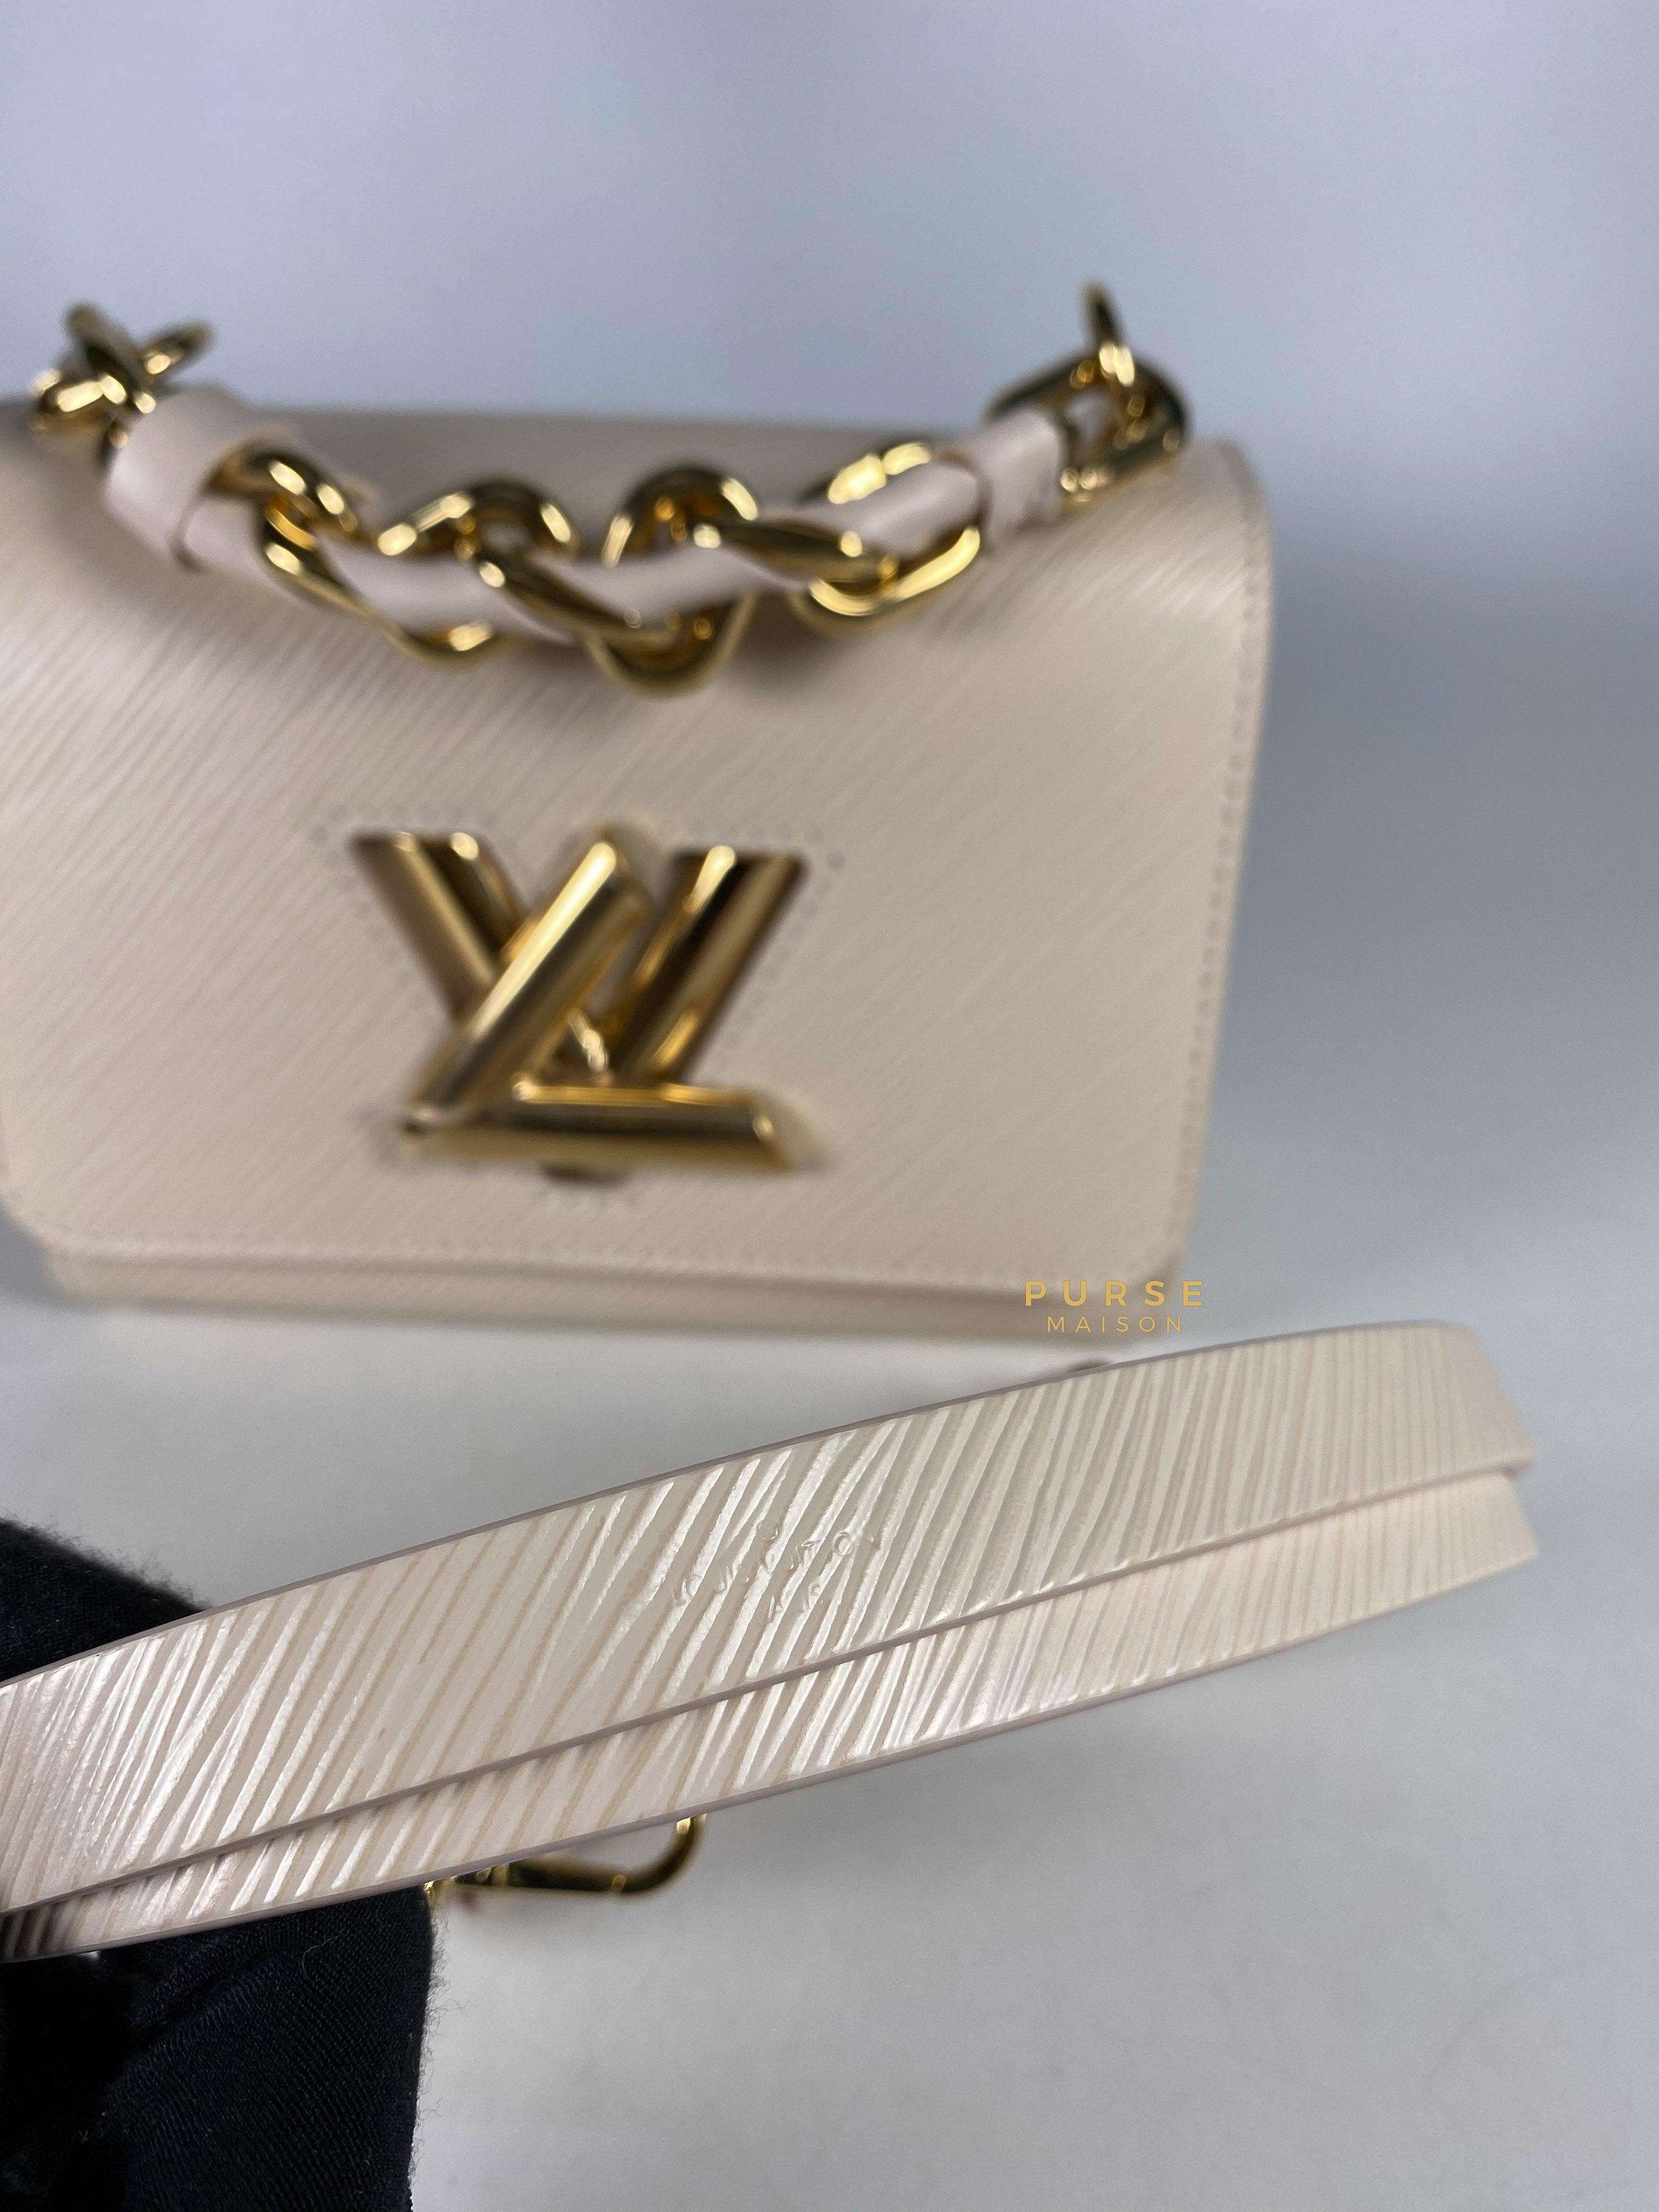 Louis Vuitton Twist PM Quartz White Epi Leather in Gold Hardware (Microchip) | Purse Maison Luxury Bags Shop